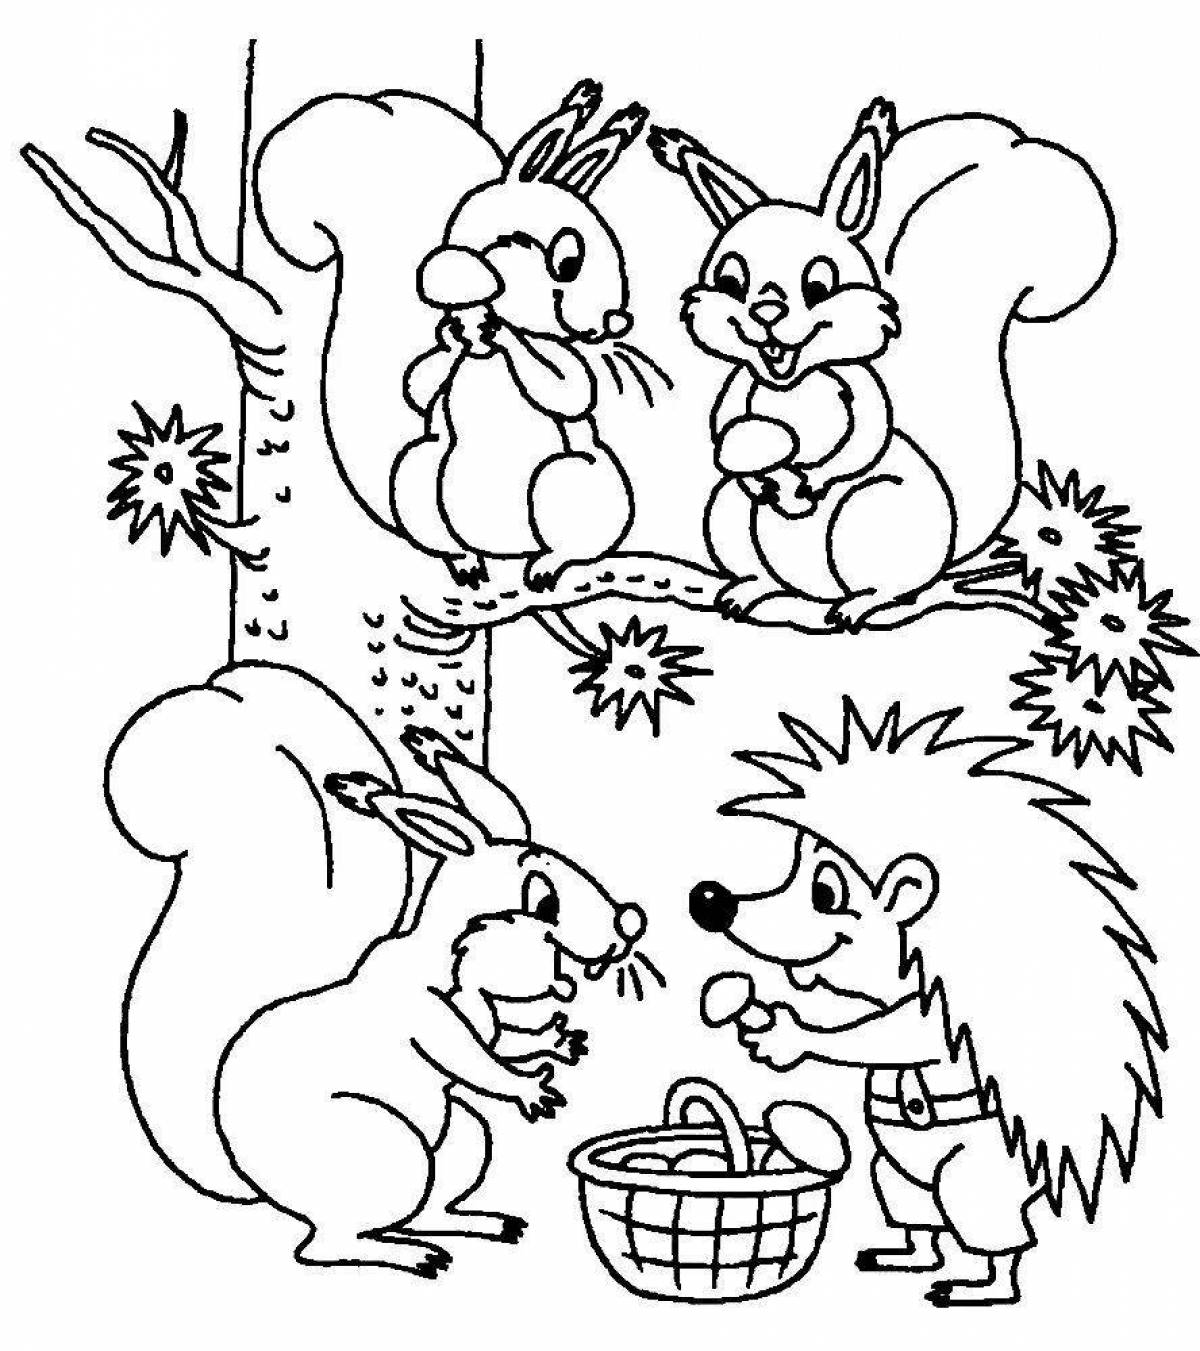 Смешная раскраска лесных животных для детей 6-7 лет